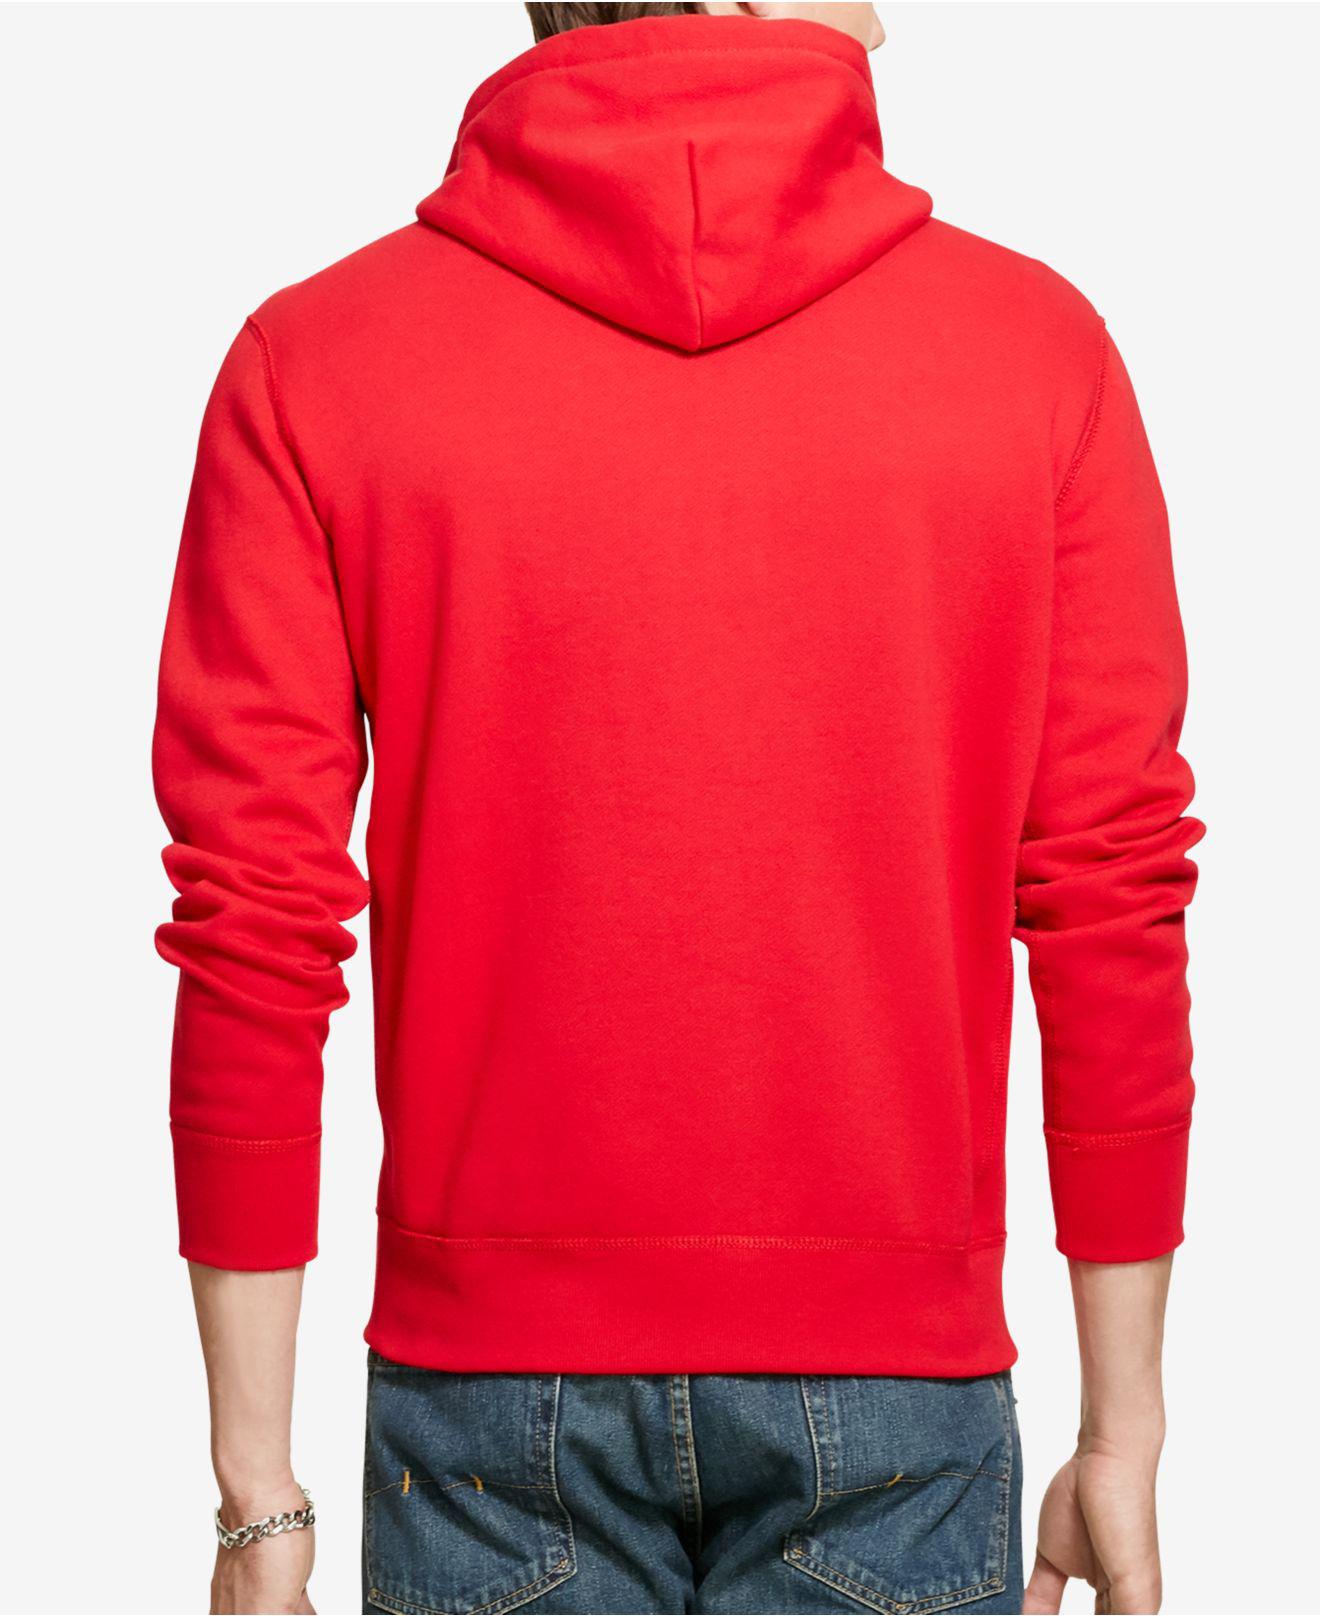 Lyst - Polo Ralph Lauren Hoodie, Full Zip Hooded Fleece in Red for Men